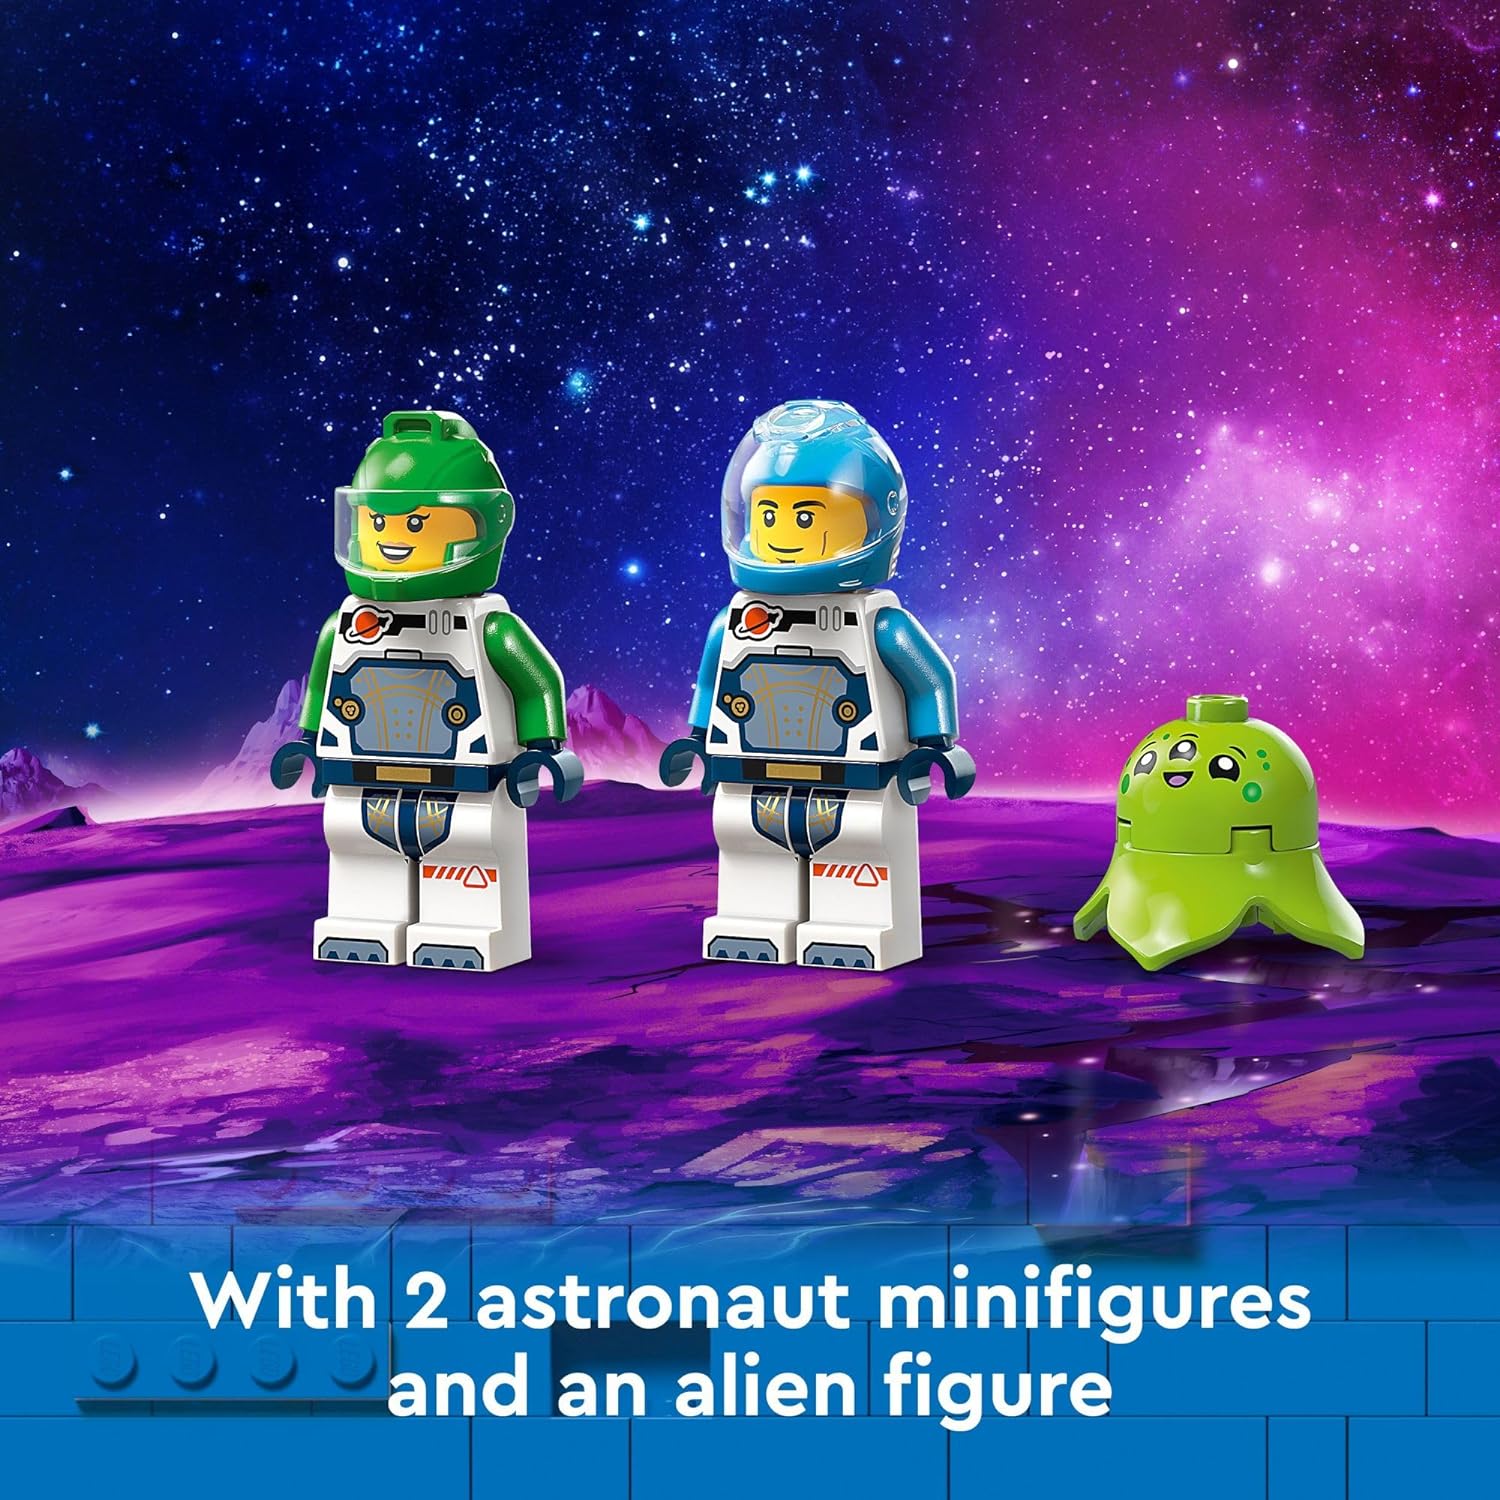 مجموعة بناء لعبة اكتشاف سفينة الفضاء والكويكبات من ليجو 60429، هدية للأطفال بعمر 4 سنوات فما فوق والذين يحبون اللعب التظاهري، تتضمن شخصيتين صغيرتين لطاقم الفضاء، كائن فضائي، كريستالات، لعبة رافعة